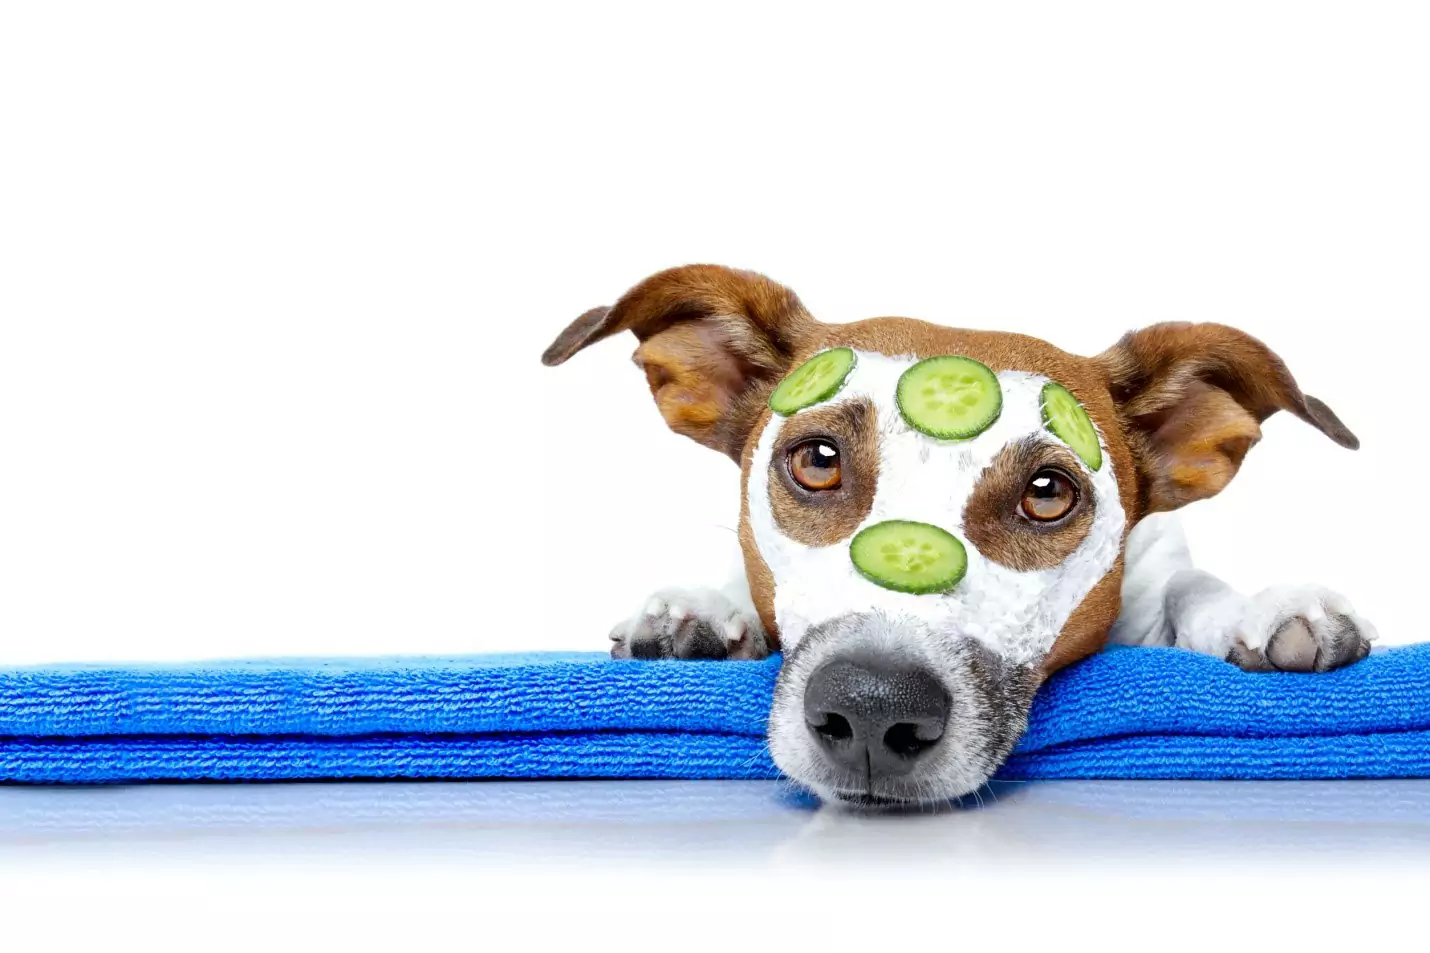 Kunnen honden komkommers eten? Wat zijn de voordelen van het geven van komkommers aan honden?